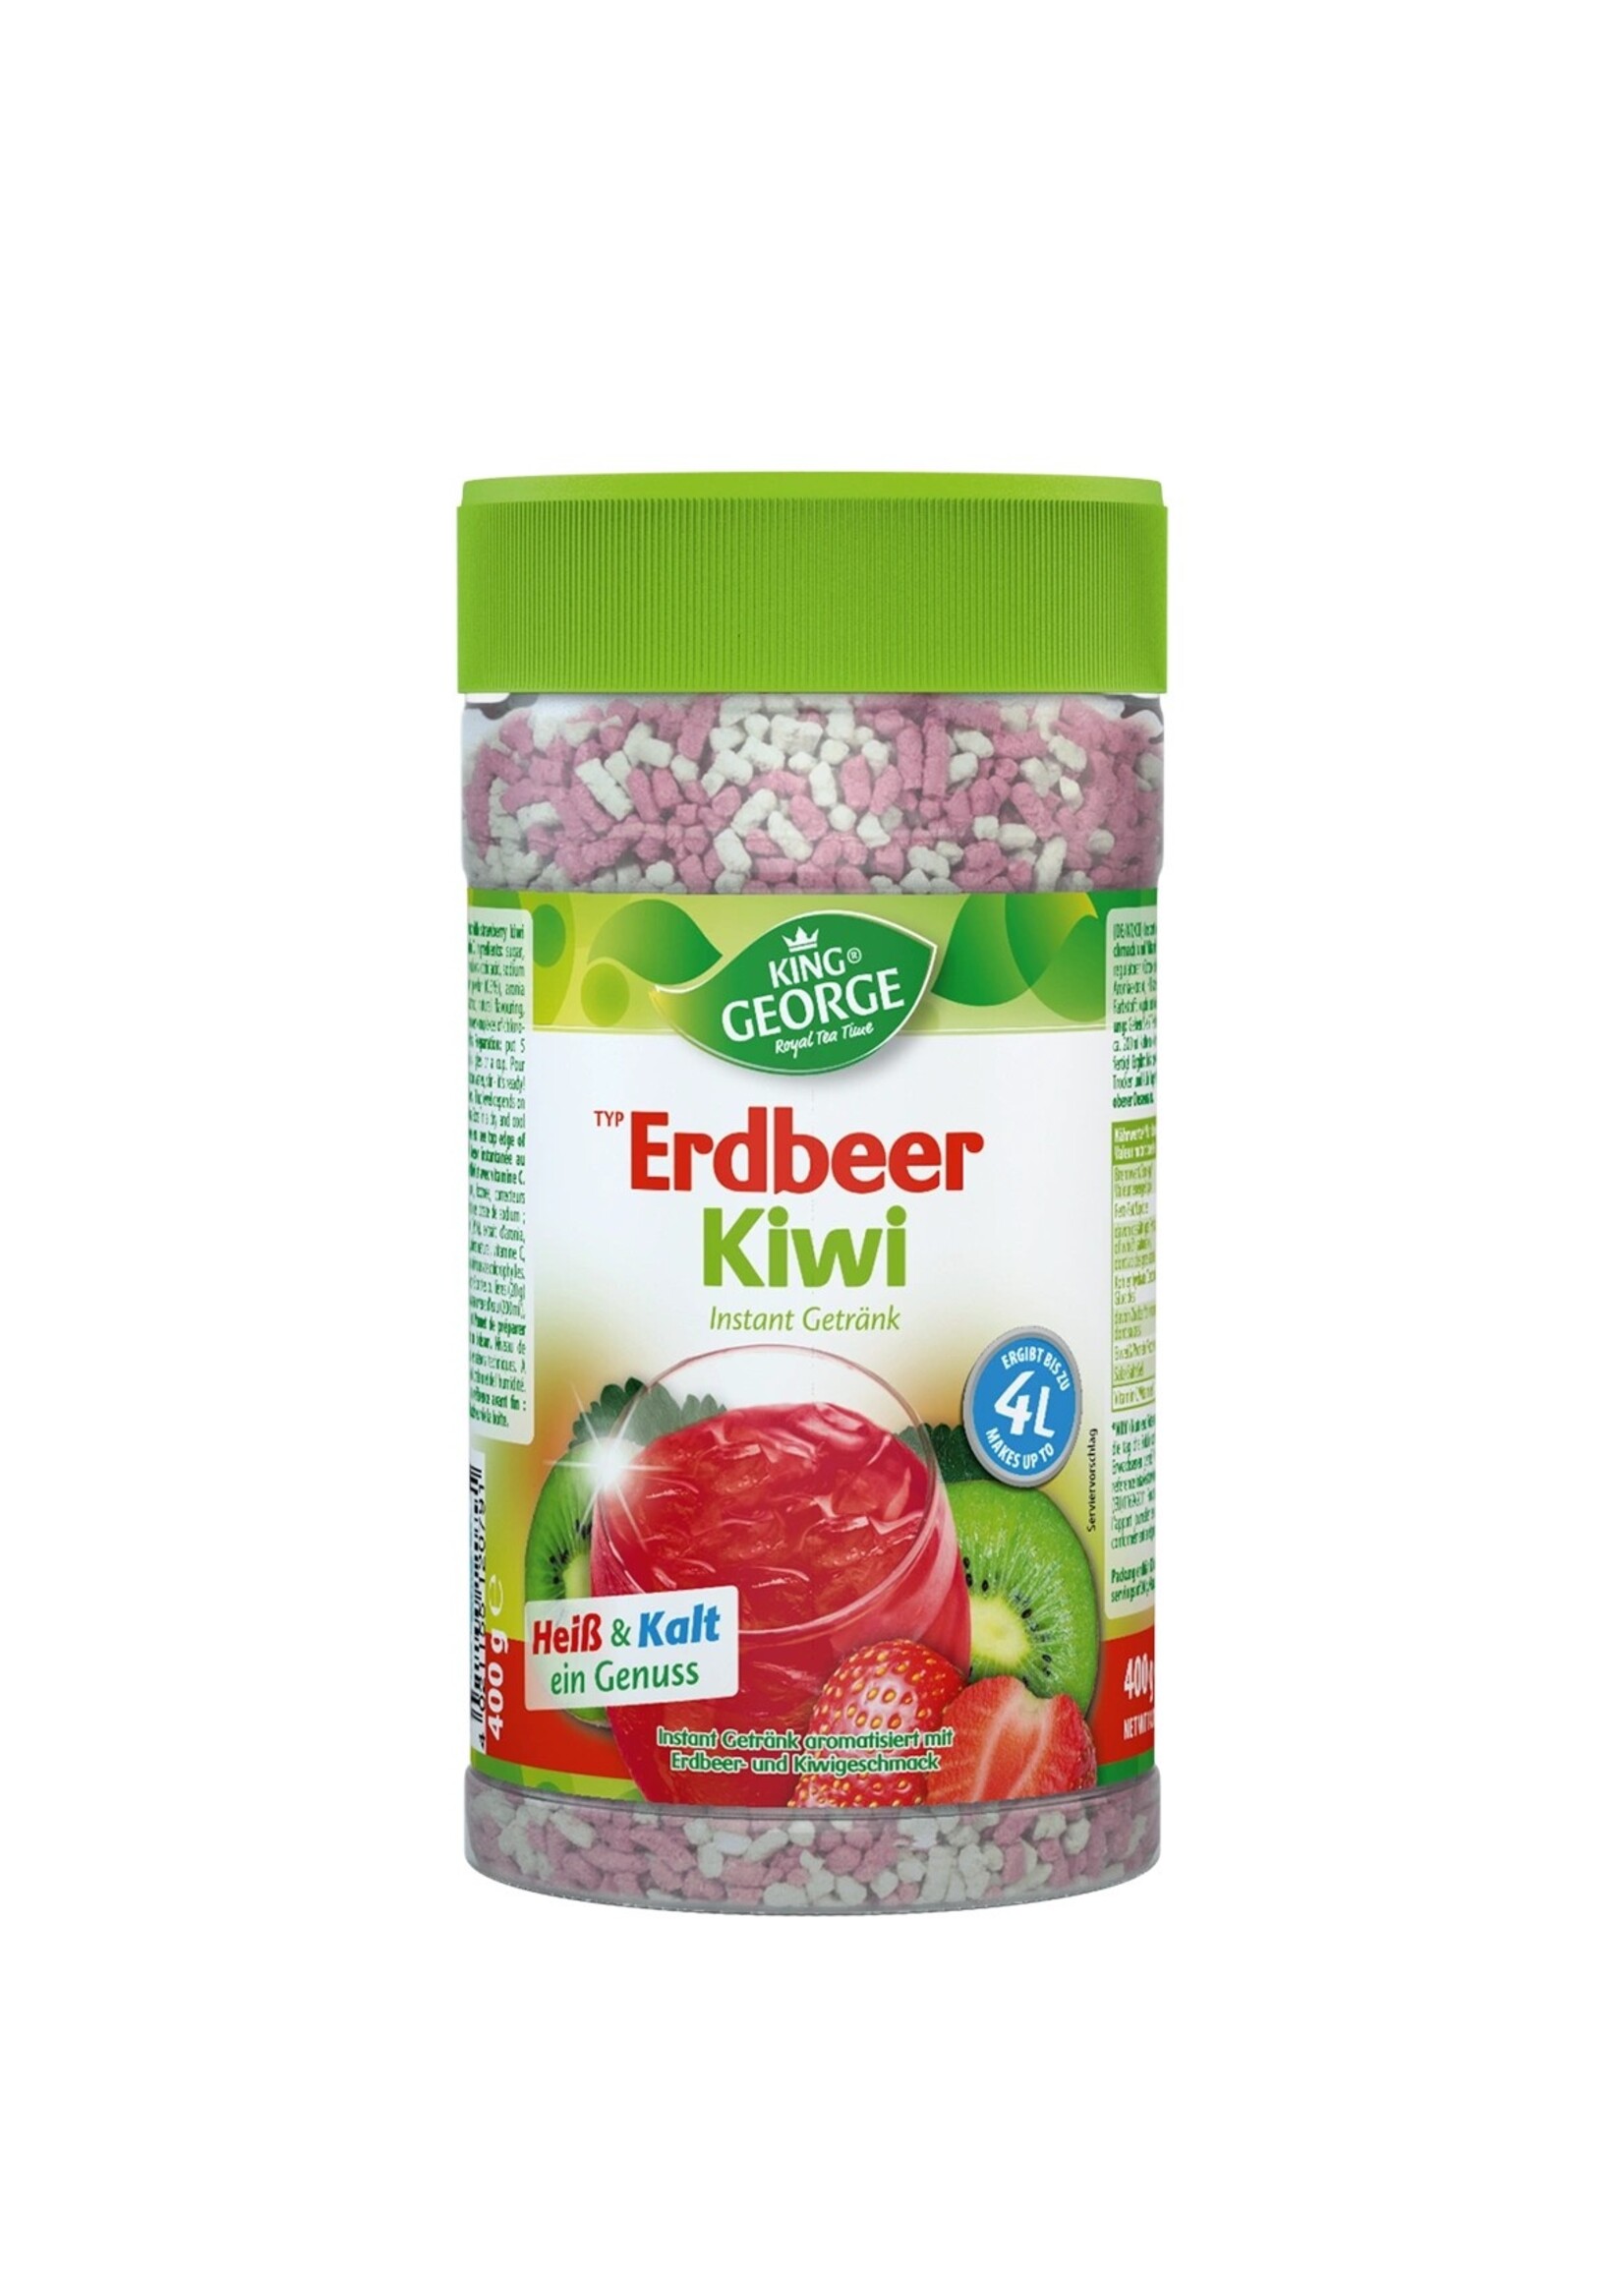 King George Erdbeer-Kiwi granulierter Tee Instant